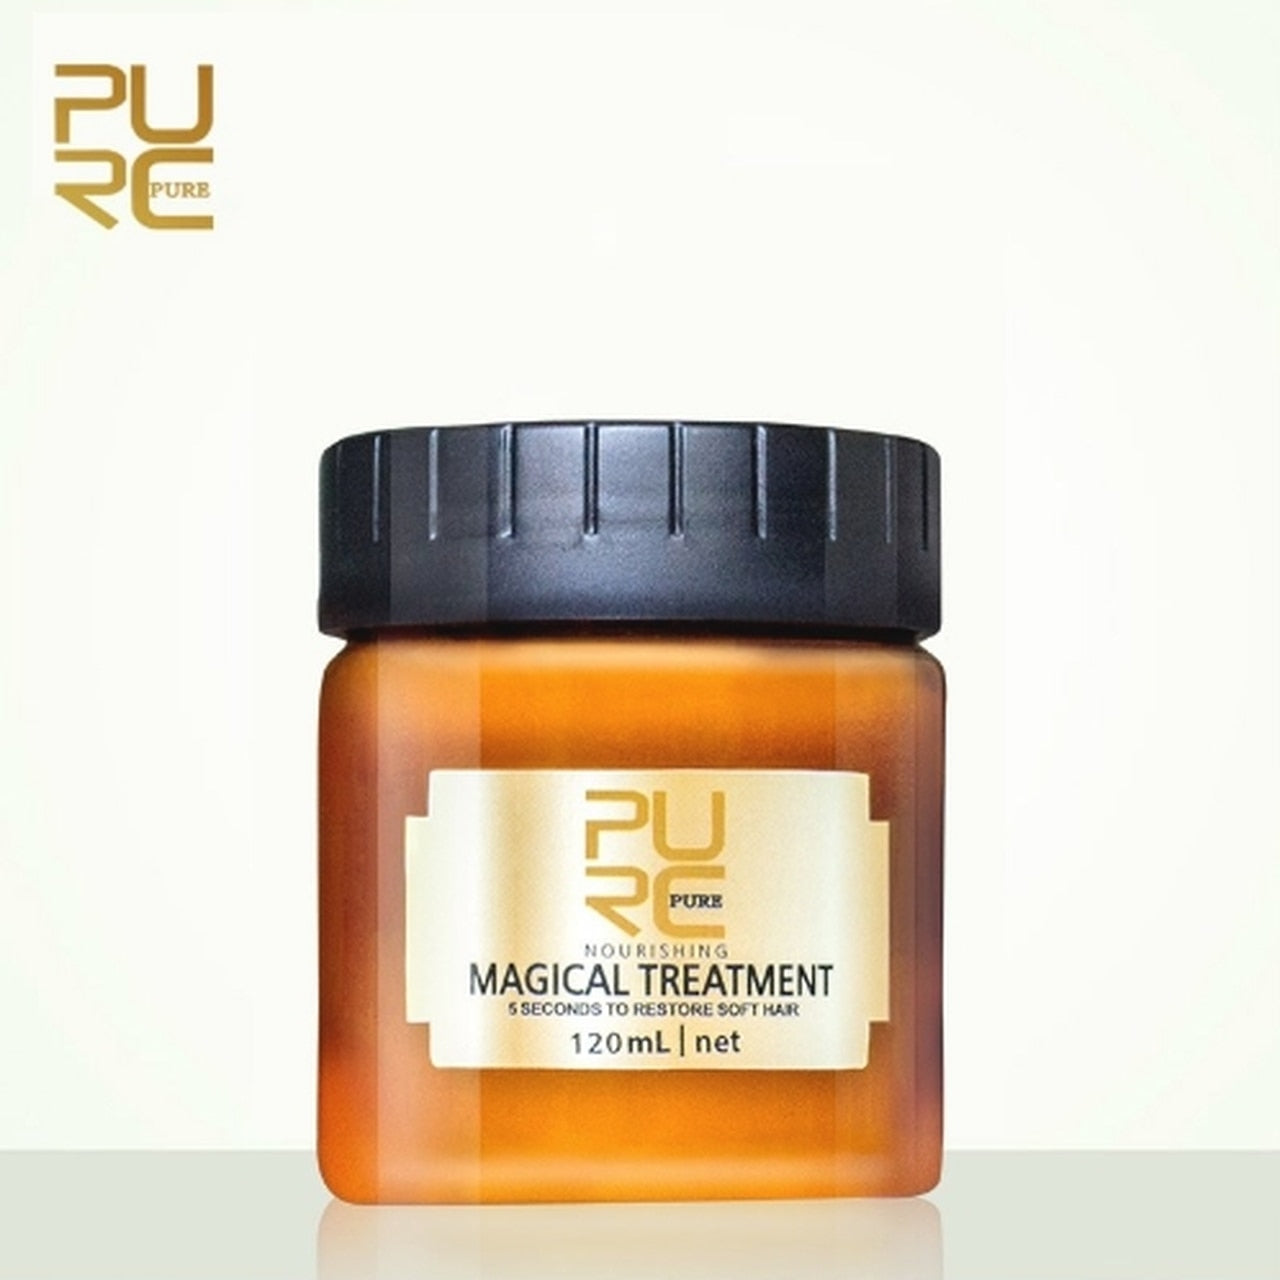 PURC™ 'MAGICAL TREATMENT' Hair Mask